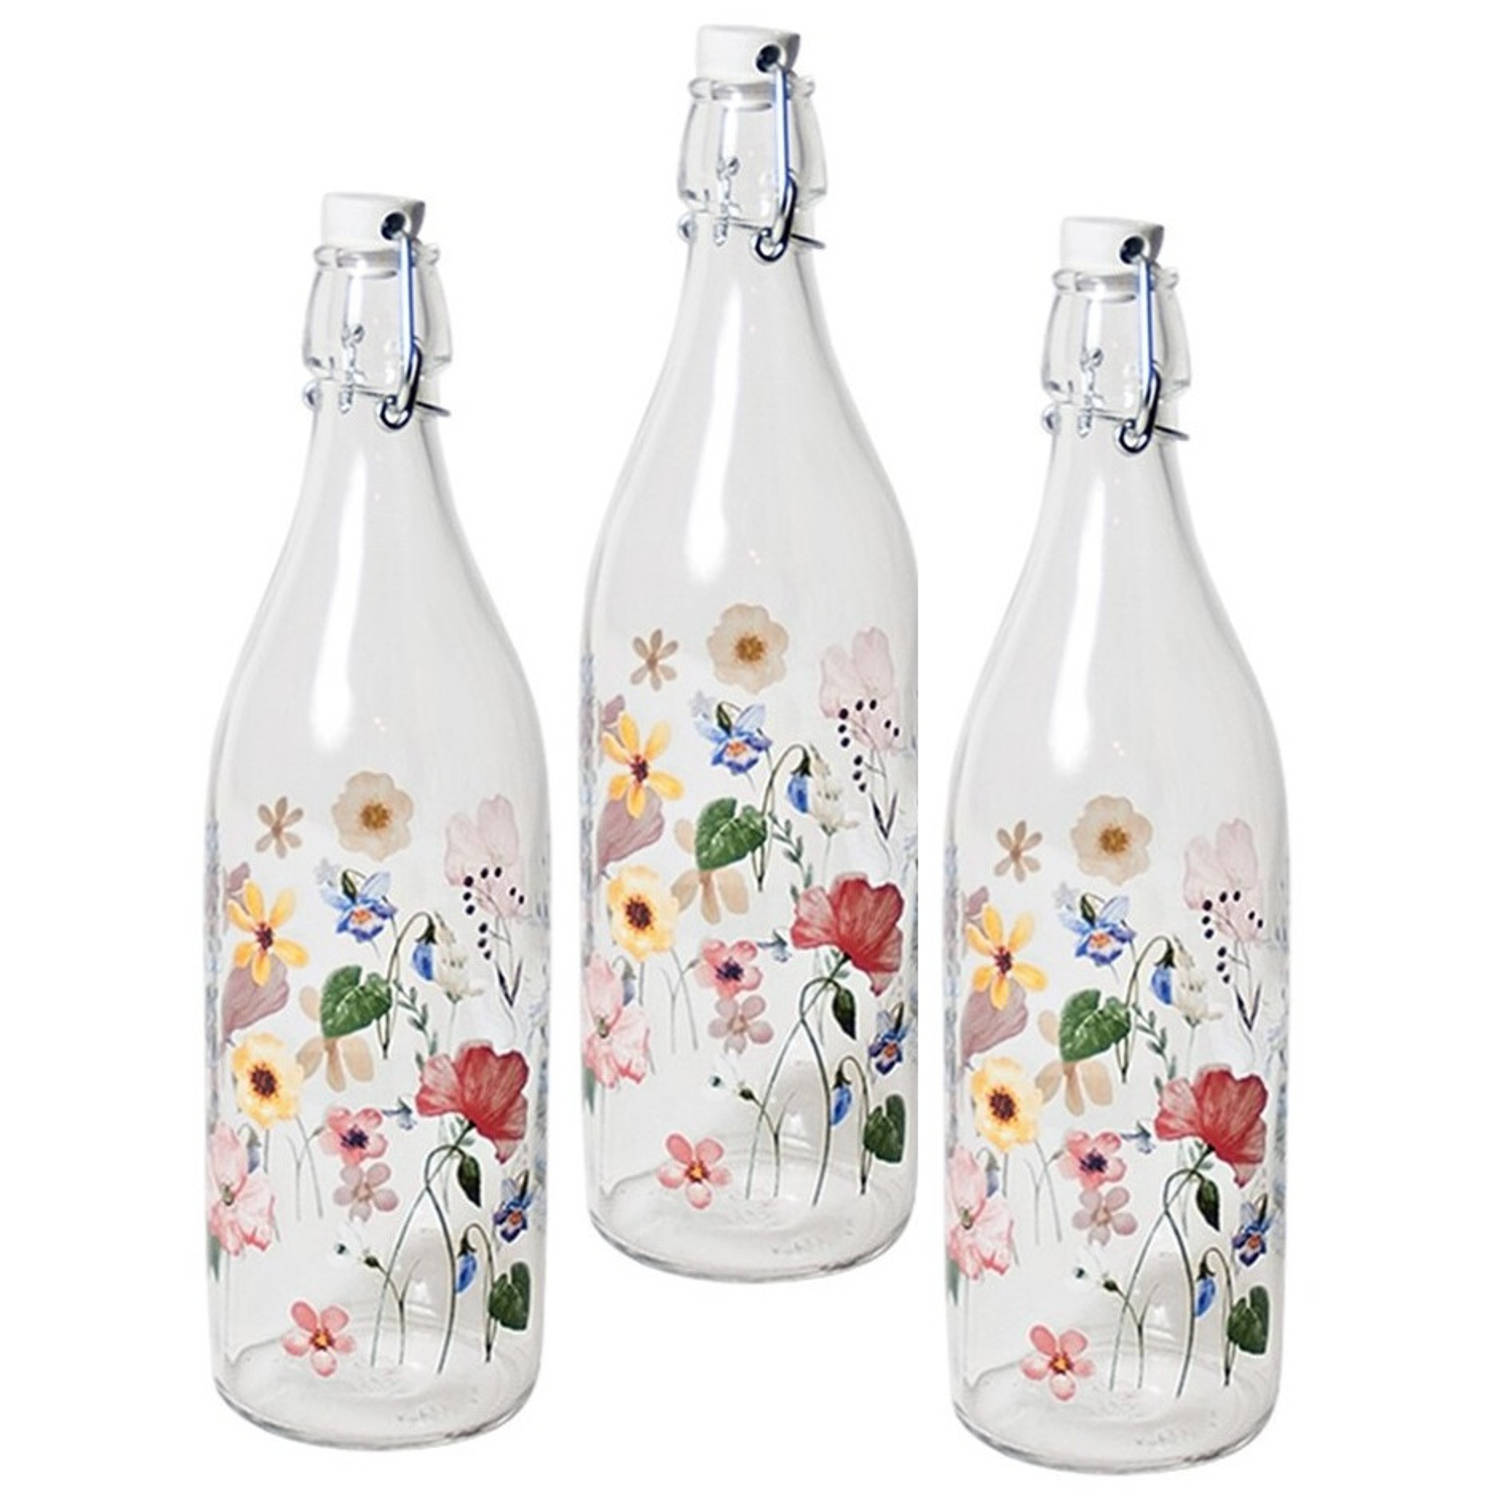 6x Glazen Beugelflessen/weckflessen Bloemenprint Met Beugeldop 1 Liter - Decoratieve Flessen